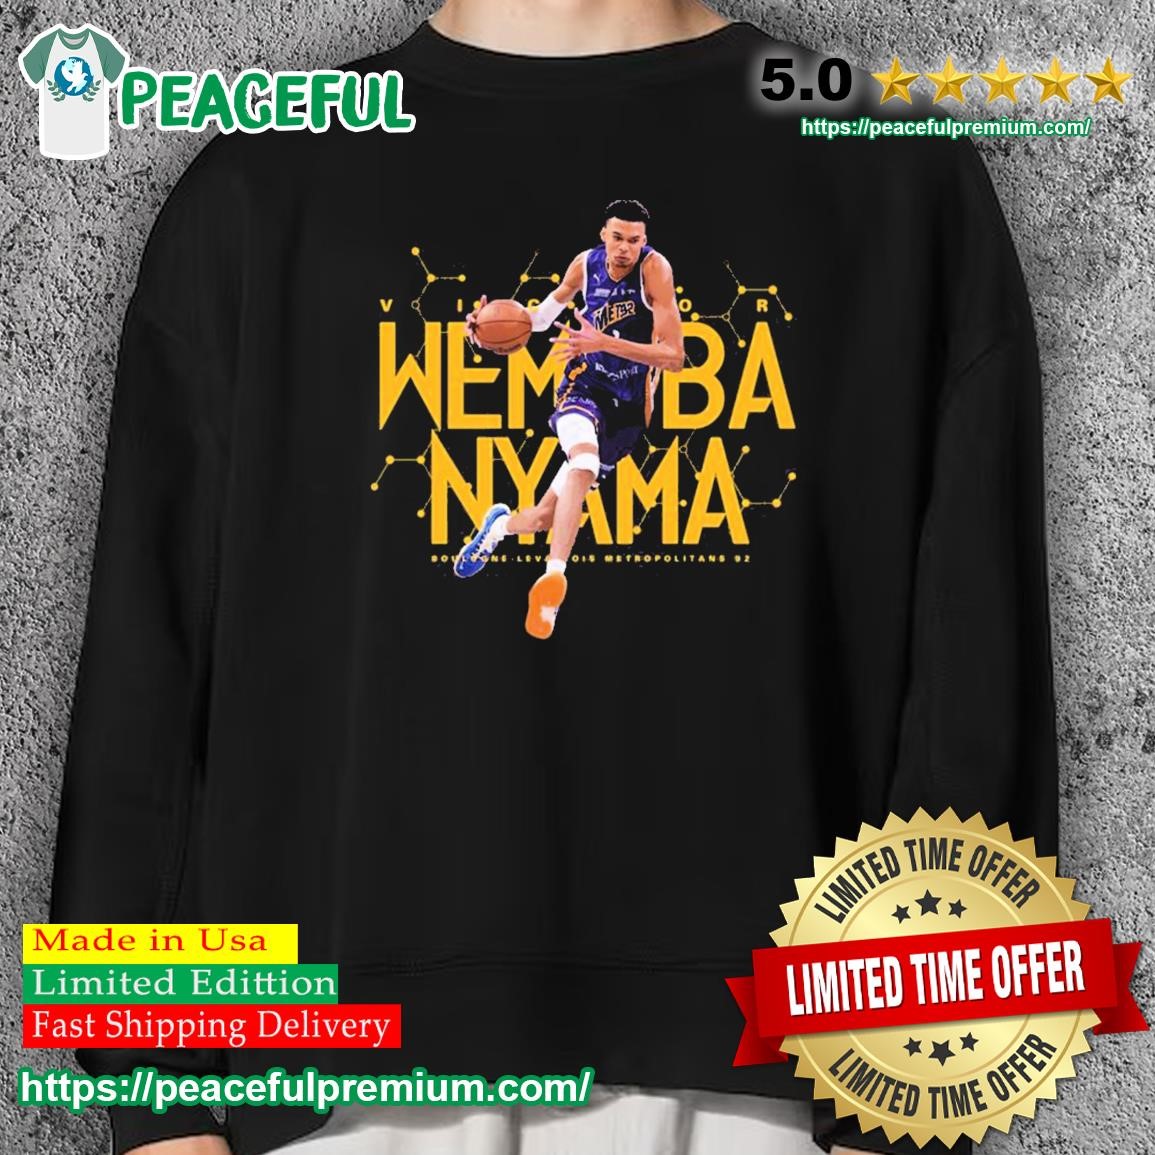 wembanyama shirt